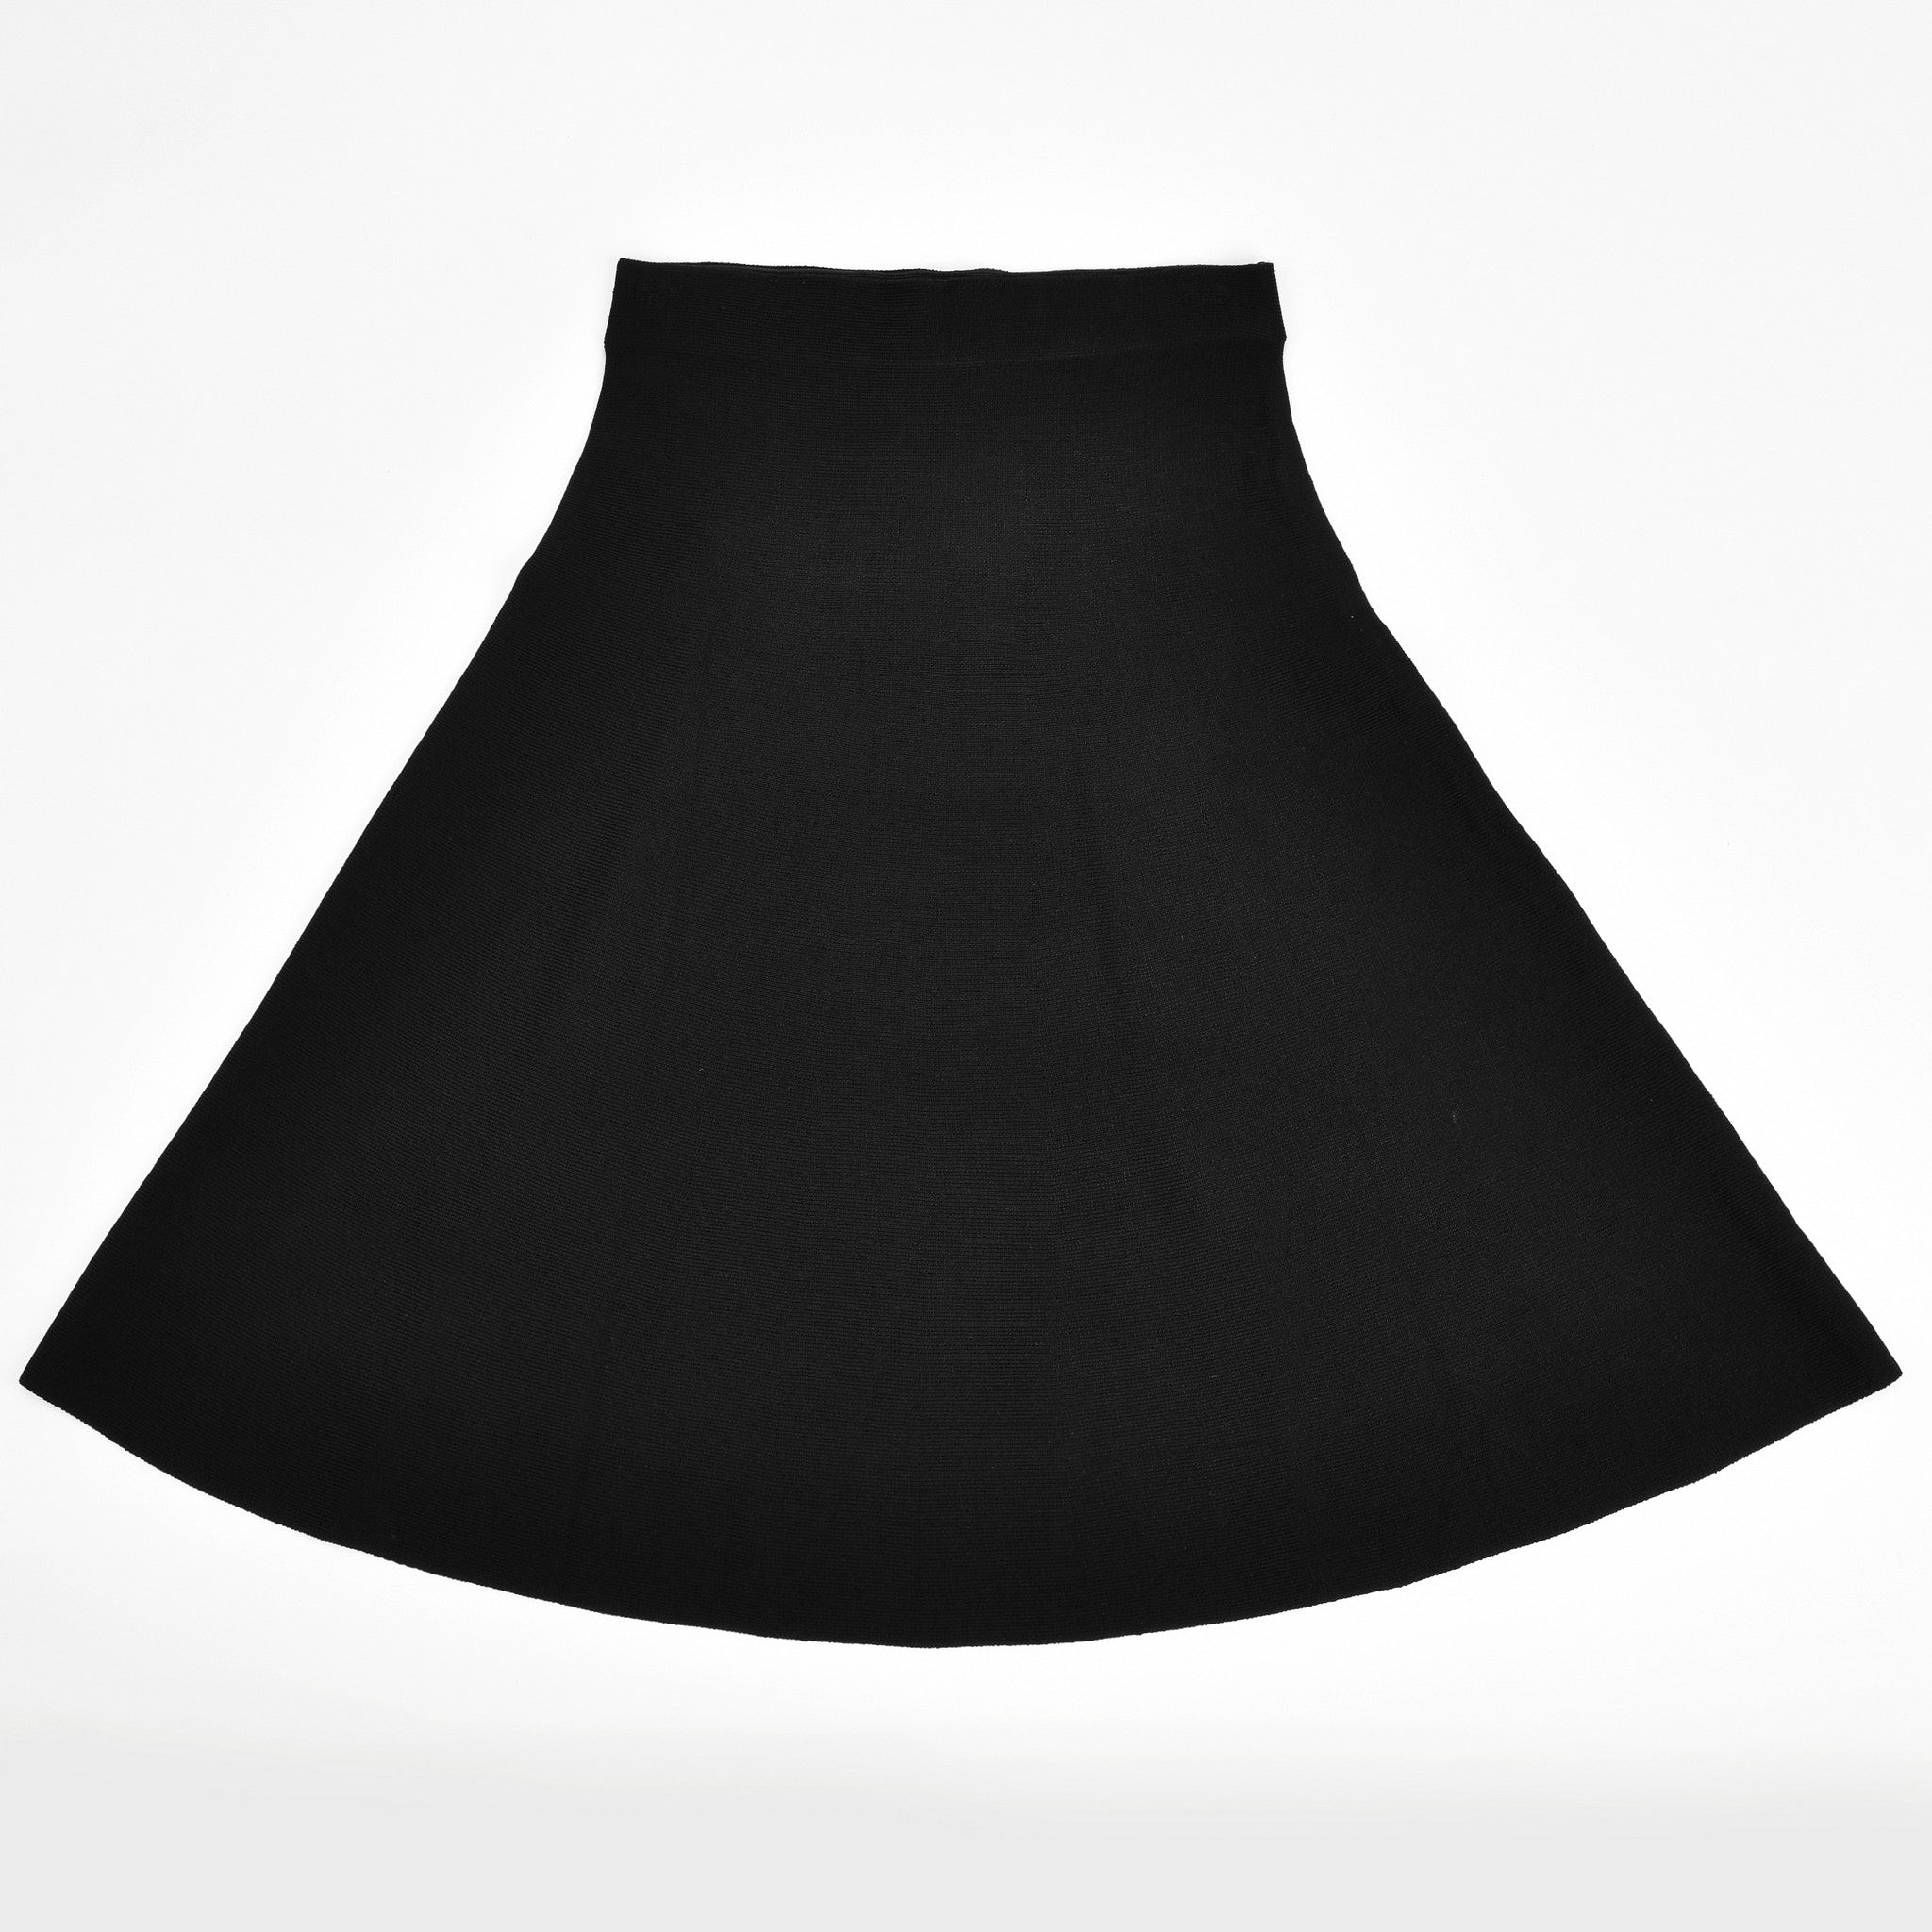 Melange Knitted Skirt - Kidichic